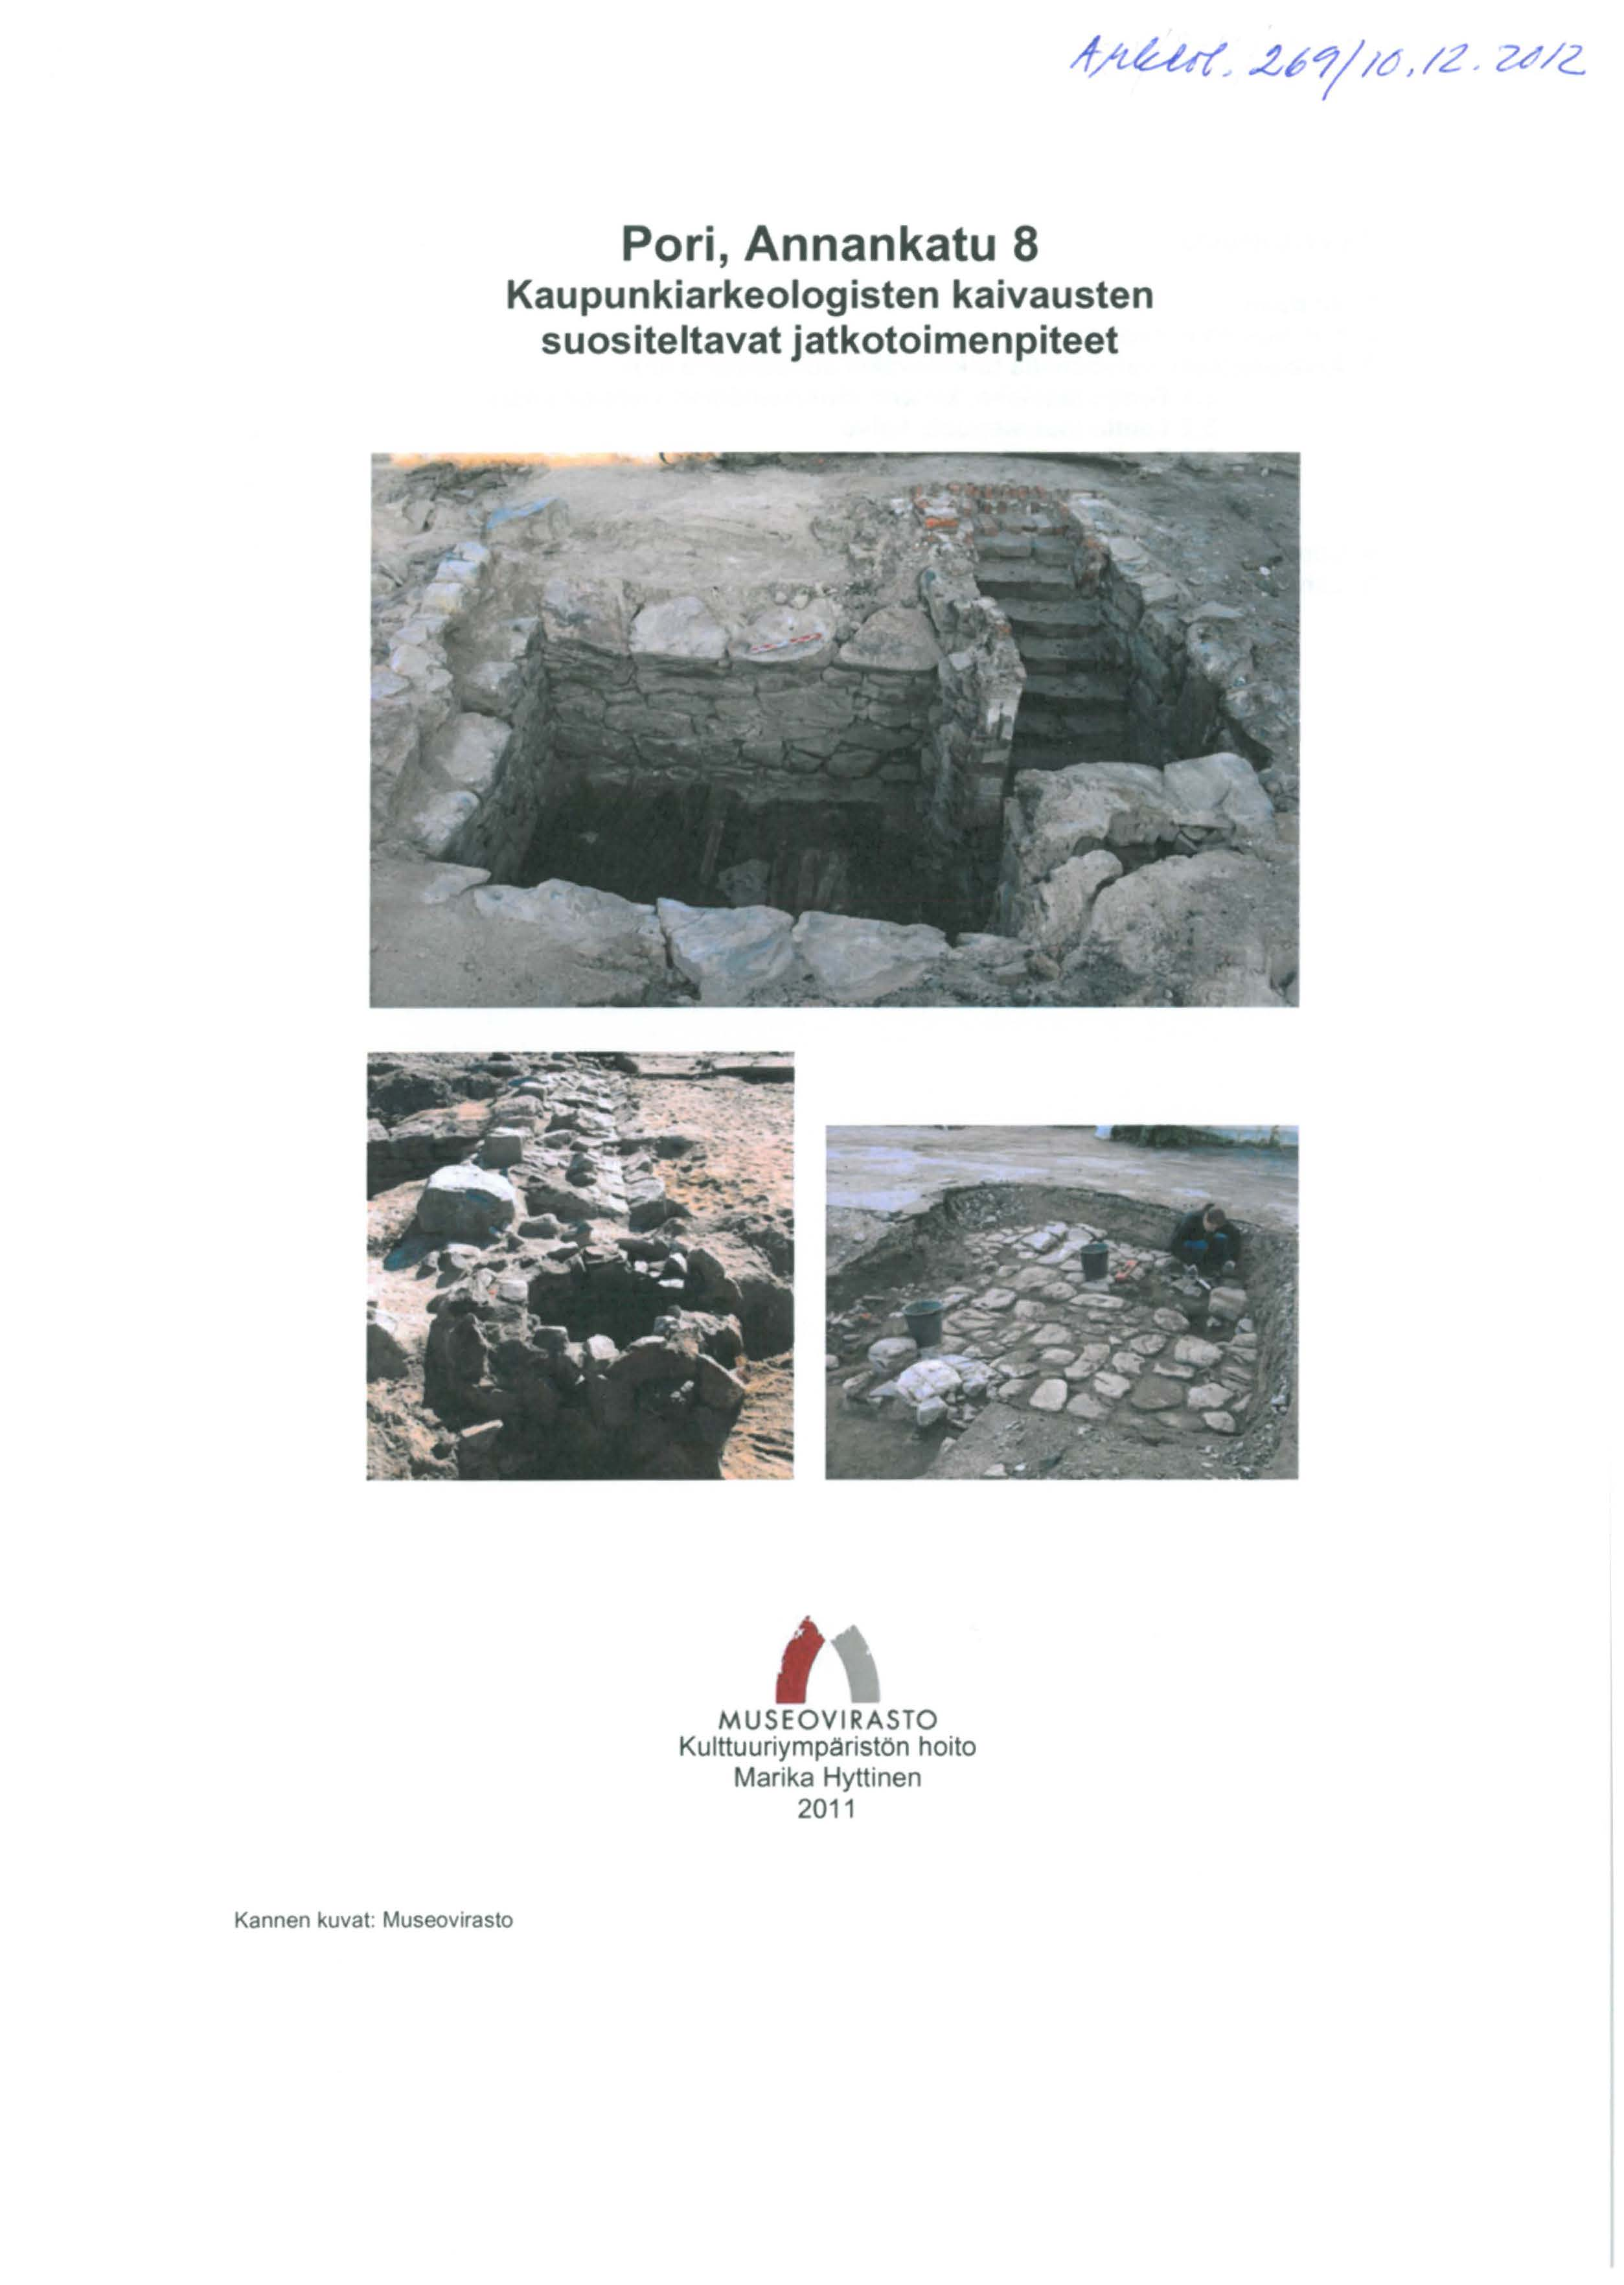 Pori, Annankatu 8 Kaupunkiarkeologisten kaivausten suositeltavat jatkotoimenpiteet